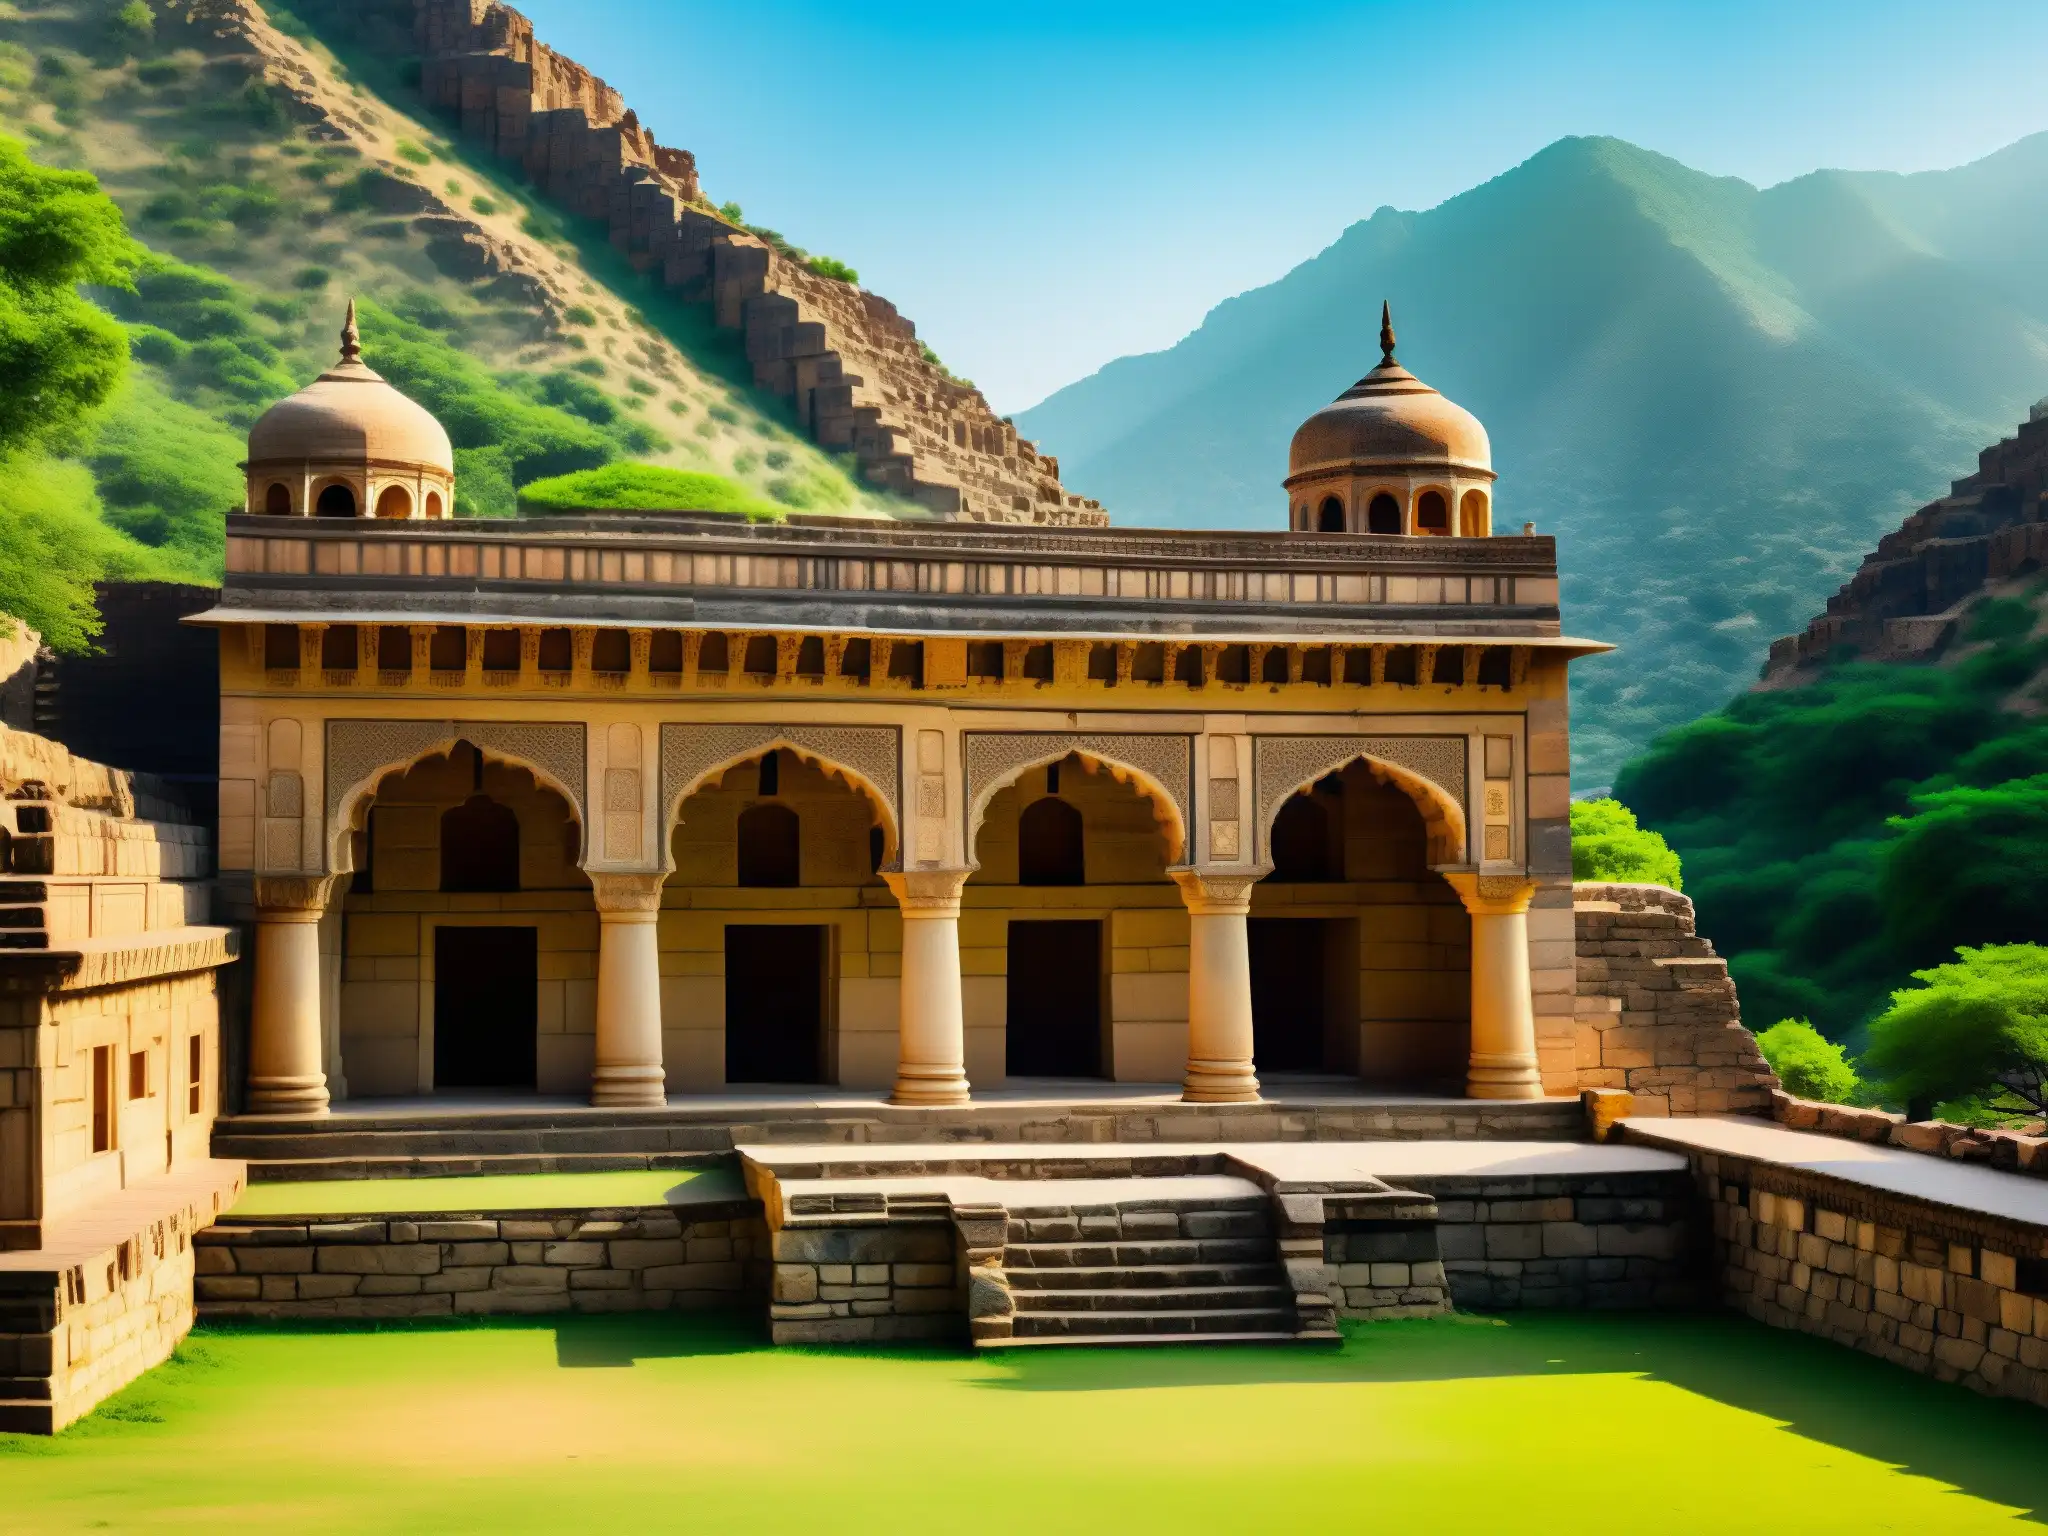 Misterio y realidad se entrelazan en la imagen del palacio Bhangarh, con sus detallados muros de piedra y misteriosas sombras